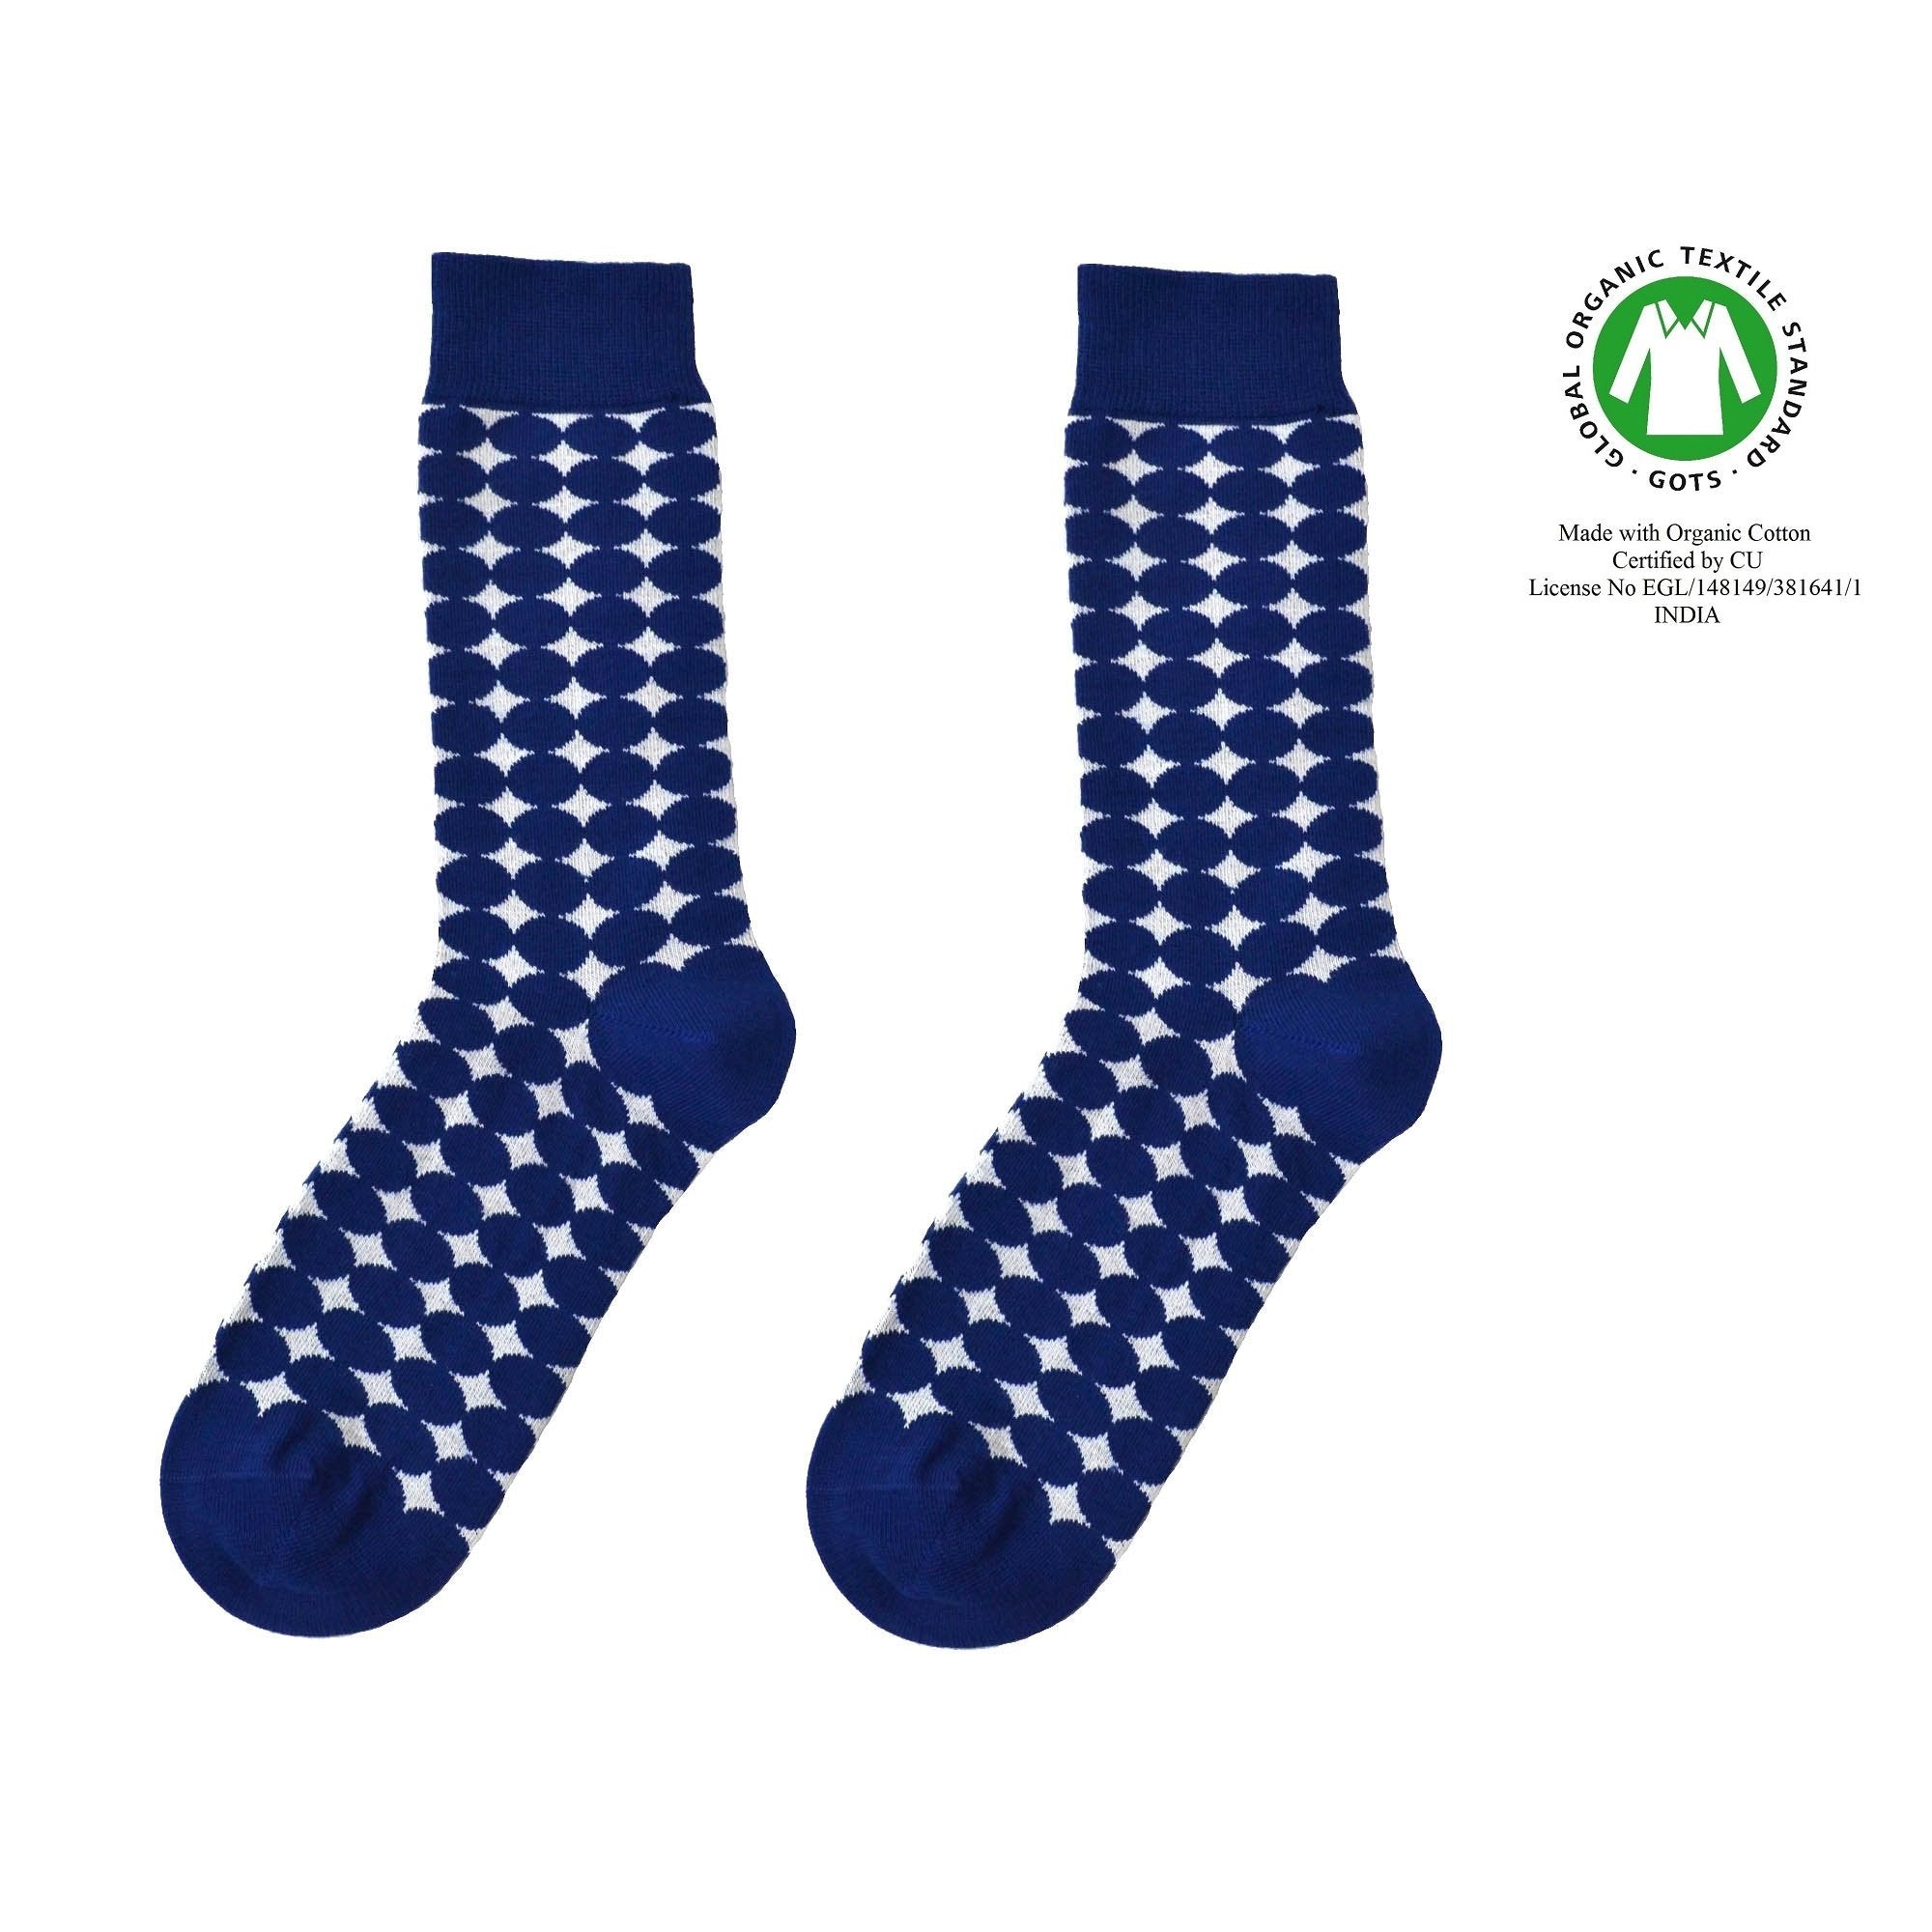 Forsberg sok - Organic socks of Sweden